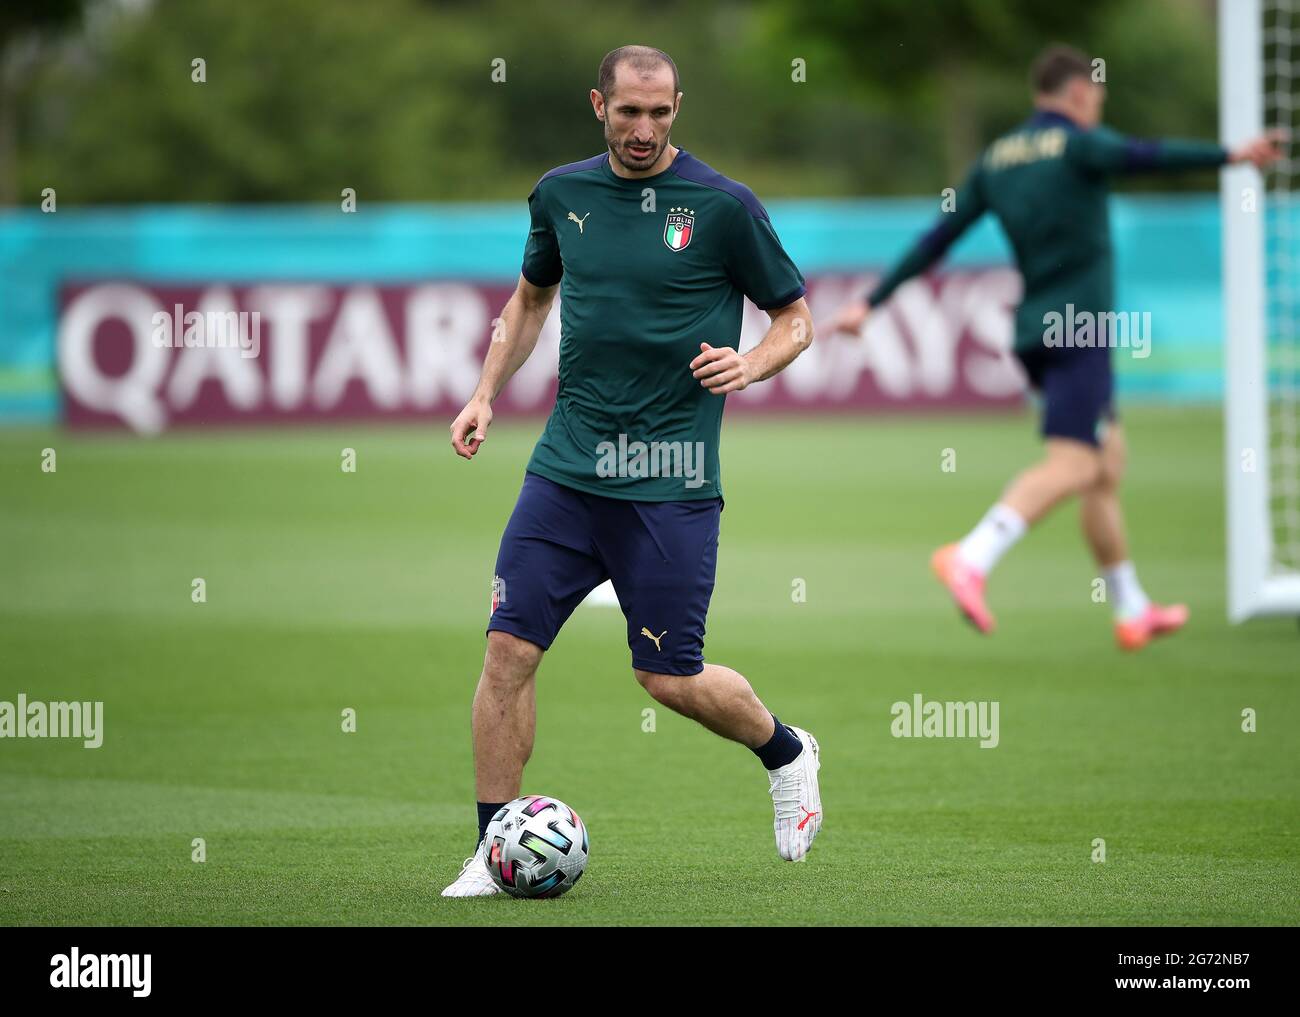 Giorgio Chiellini, de l'Italie, pendant une session de formation au terrain d'entraînement de Tottenham Hotspur. Date de la photo: Samedi 10 juillet 2021. Banque D'Images